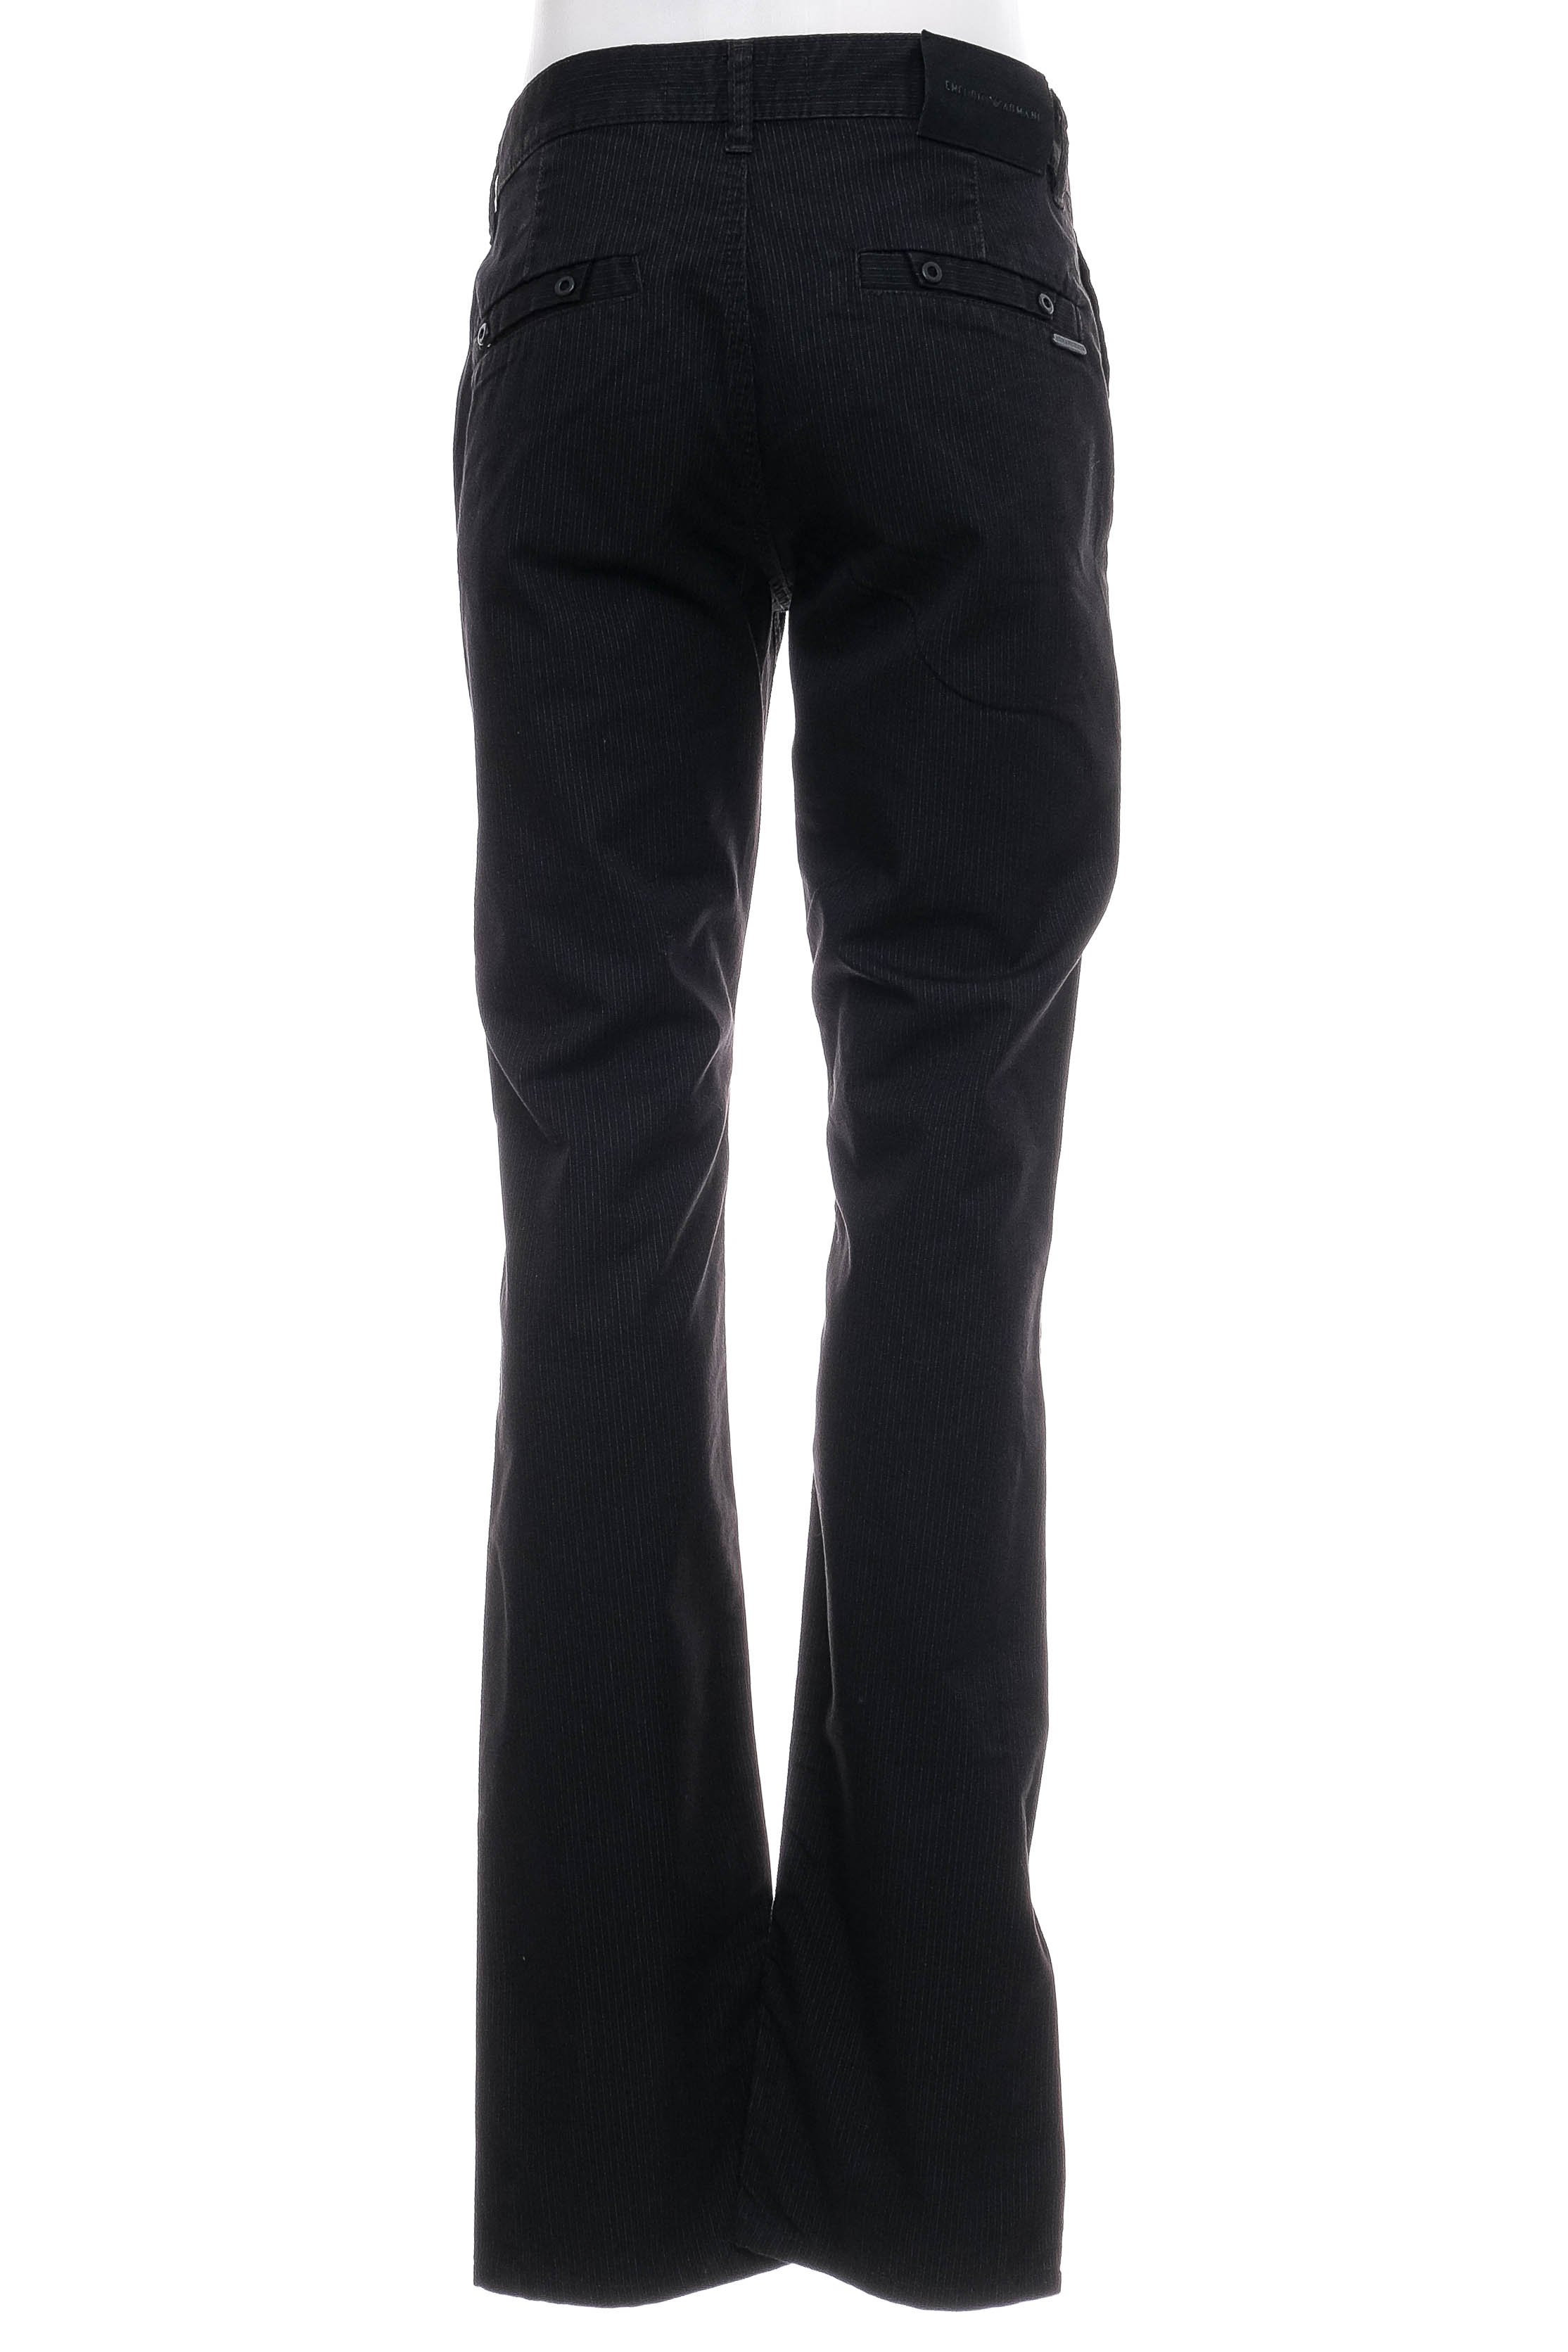 Ανδρικά παντελόνια - Armani Jeans - 1